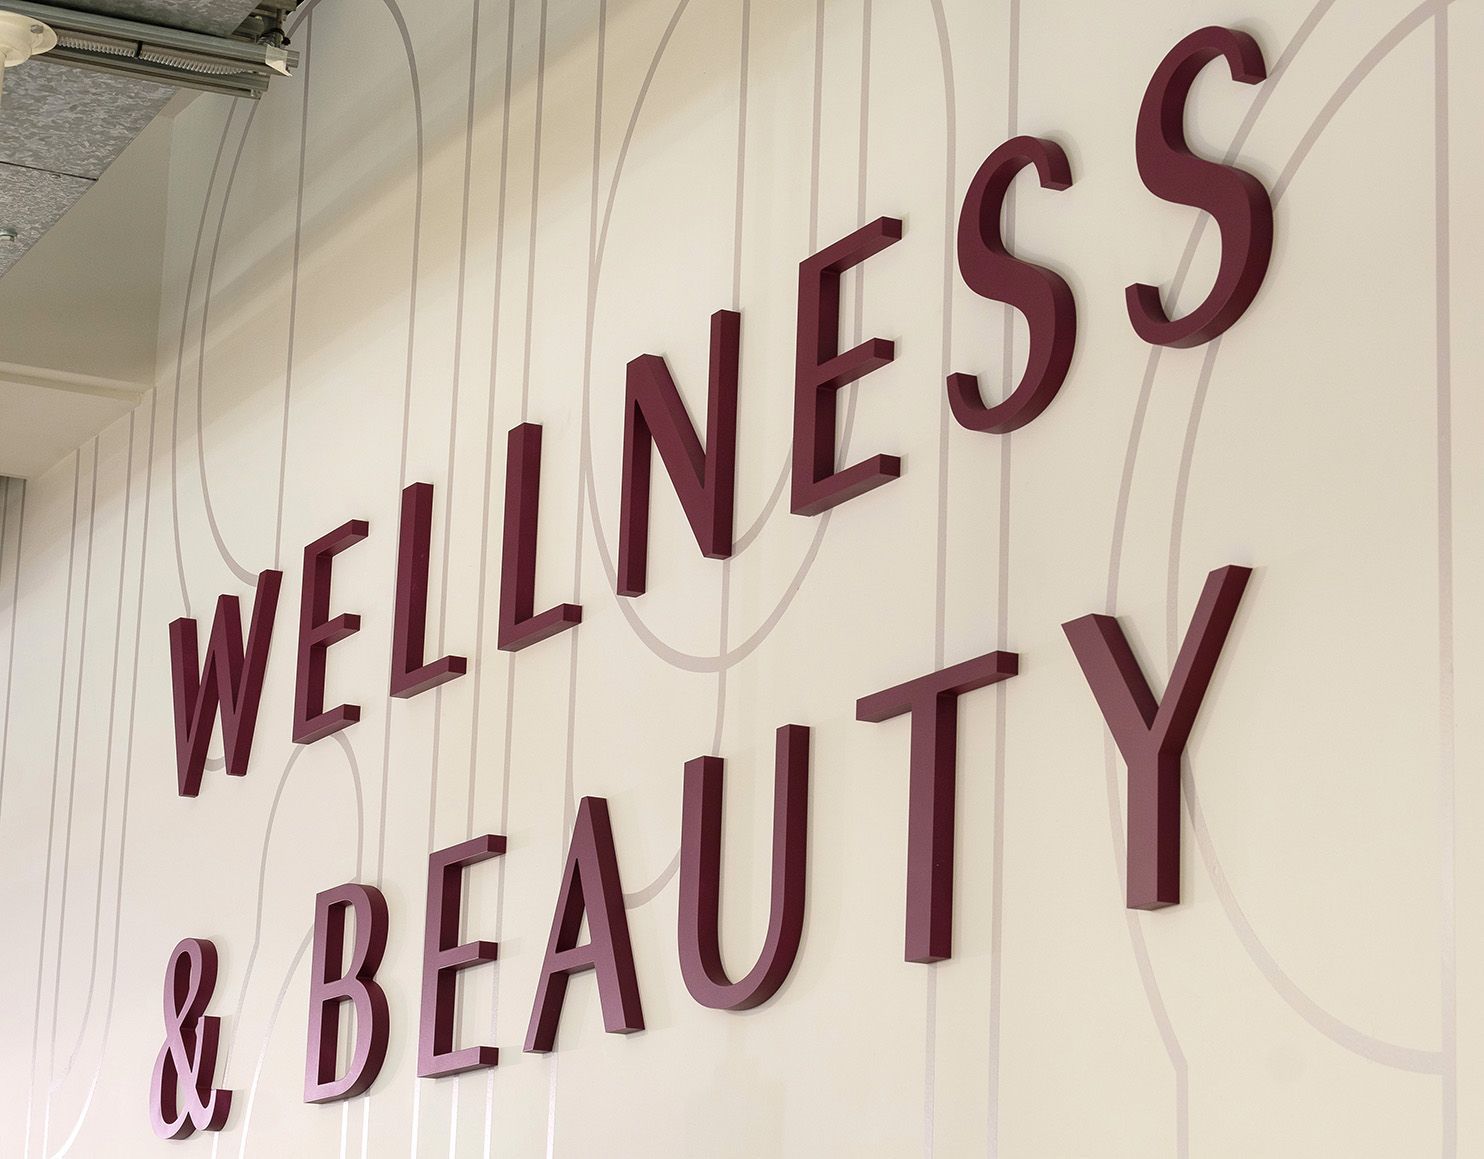 Whole Foods Wellness & Beauty signage